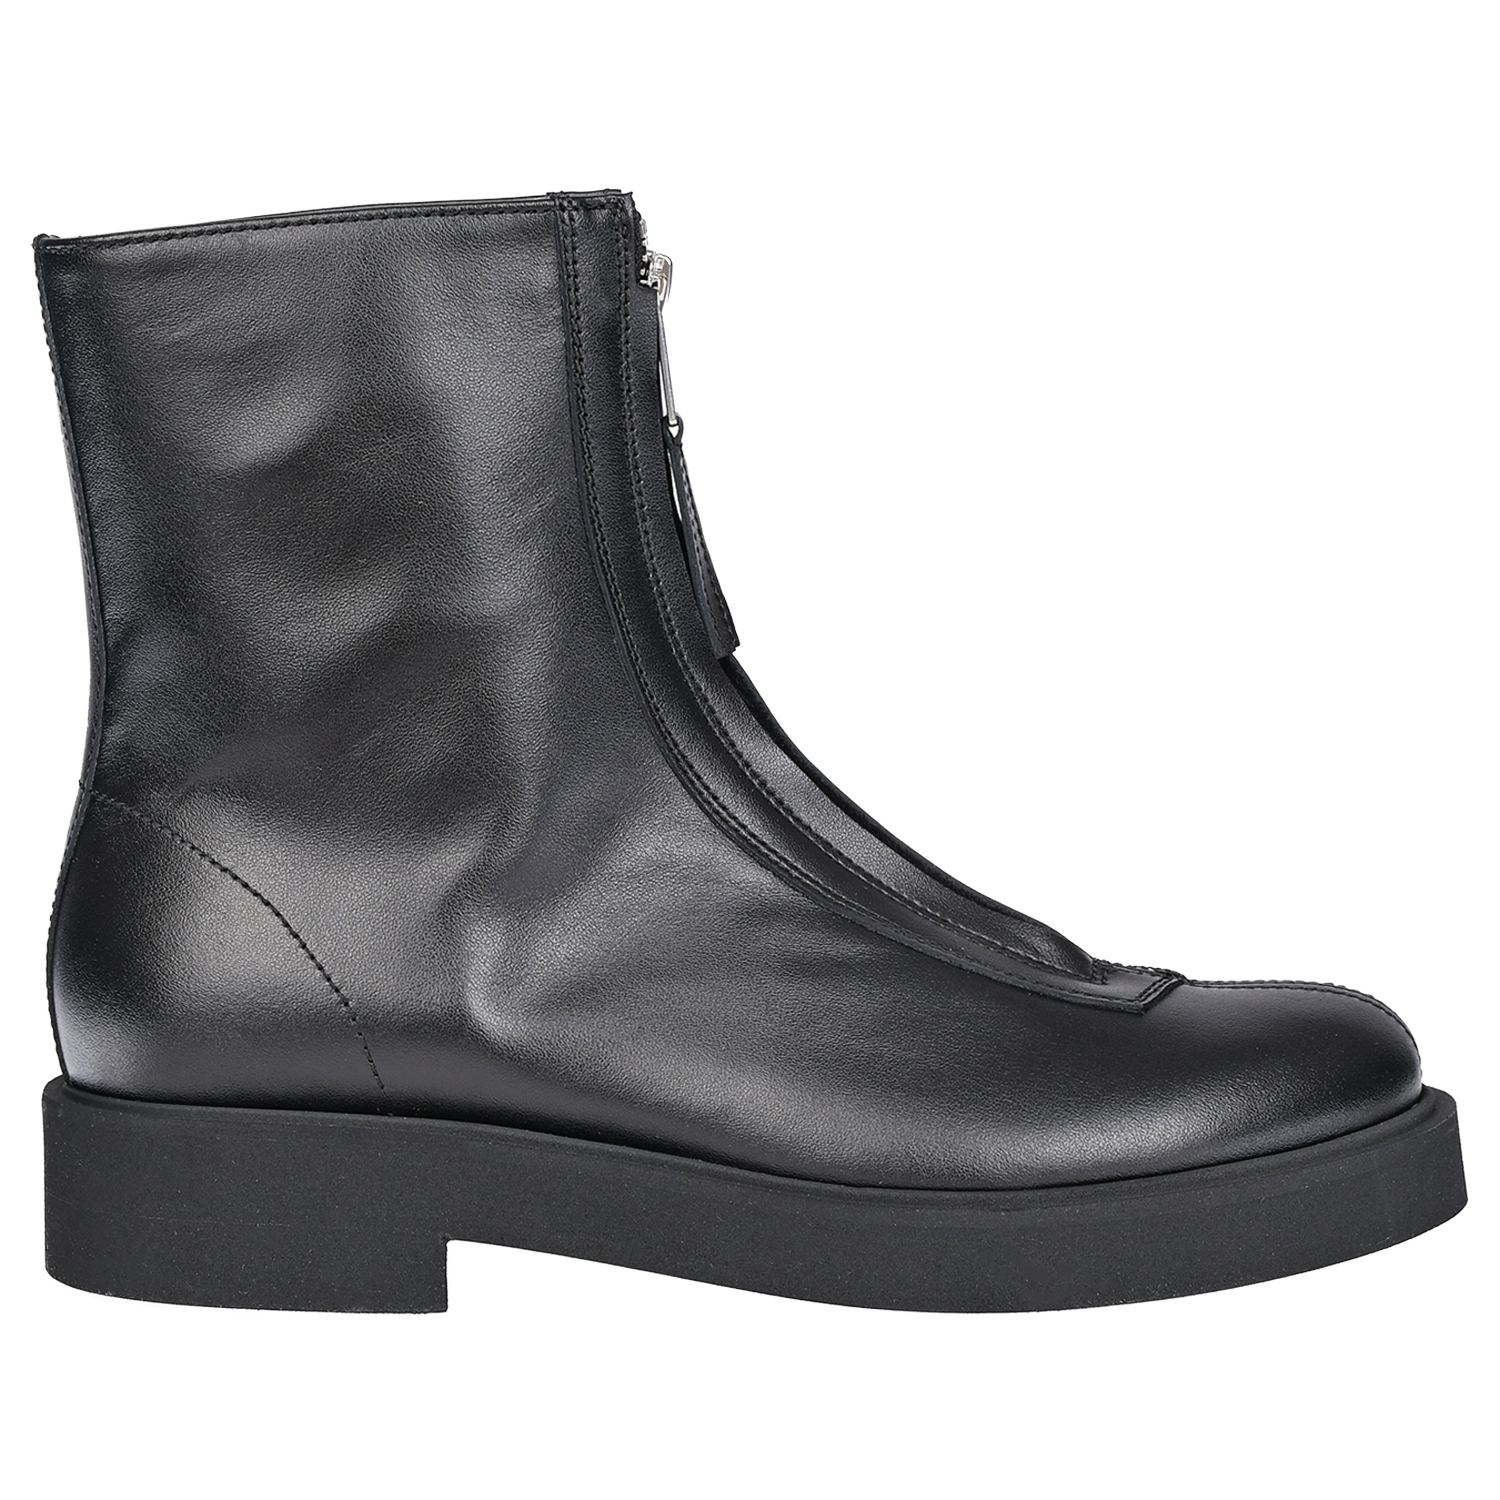 Кожаные ботинки на молнии Jarrett детские, размер 33, цвет черный - фото 2